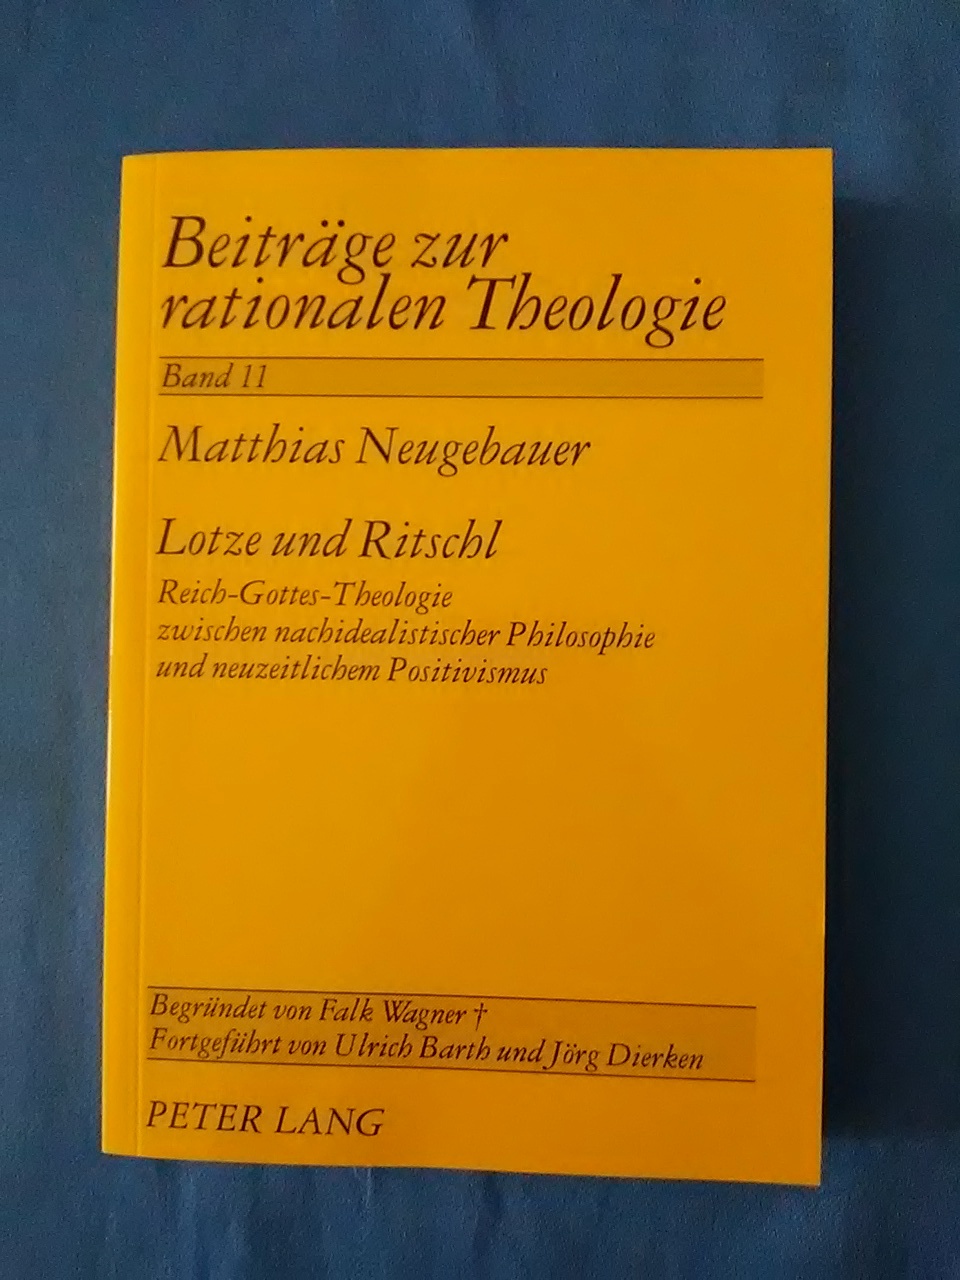 Lotze und Ritschl : Reich-Gottes-Theologie zwischen nachidealistischer Philosophie und neuzeitlichem Positivismus. Beiträge zur rationalen Theologie ; Bd. 11 - Neugebauer, Matthias.